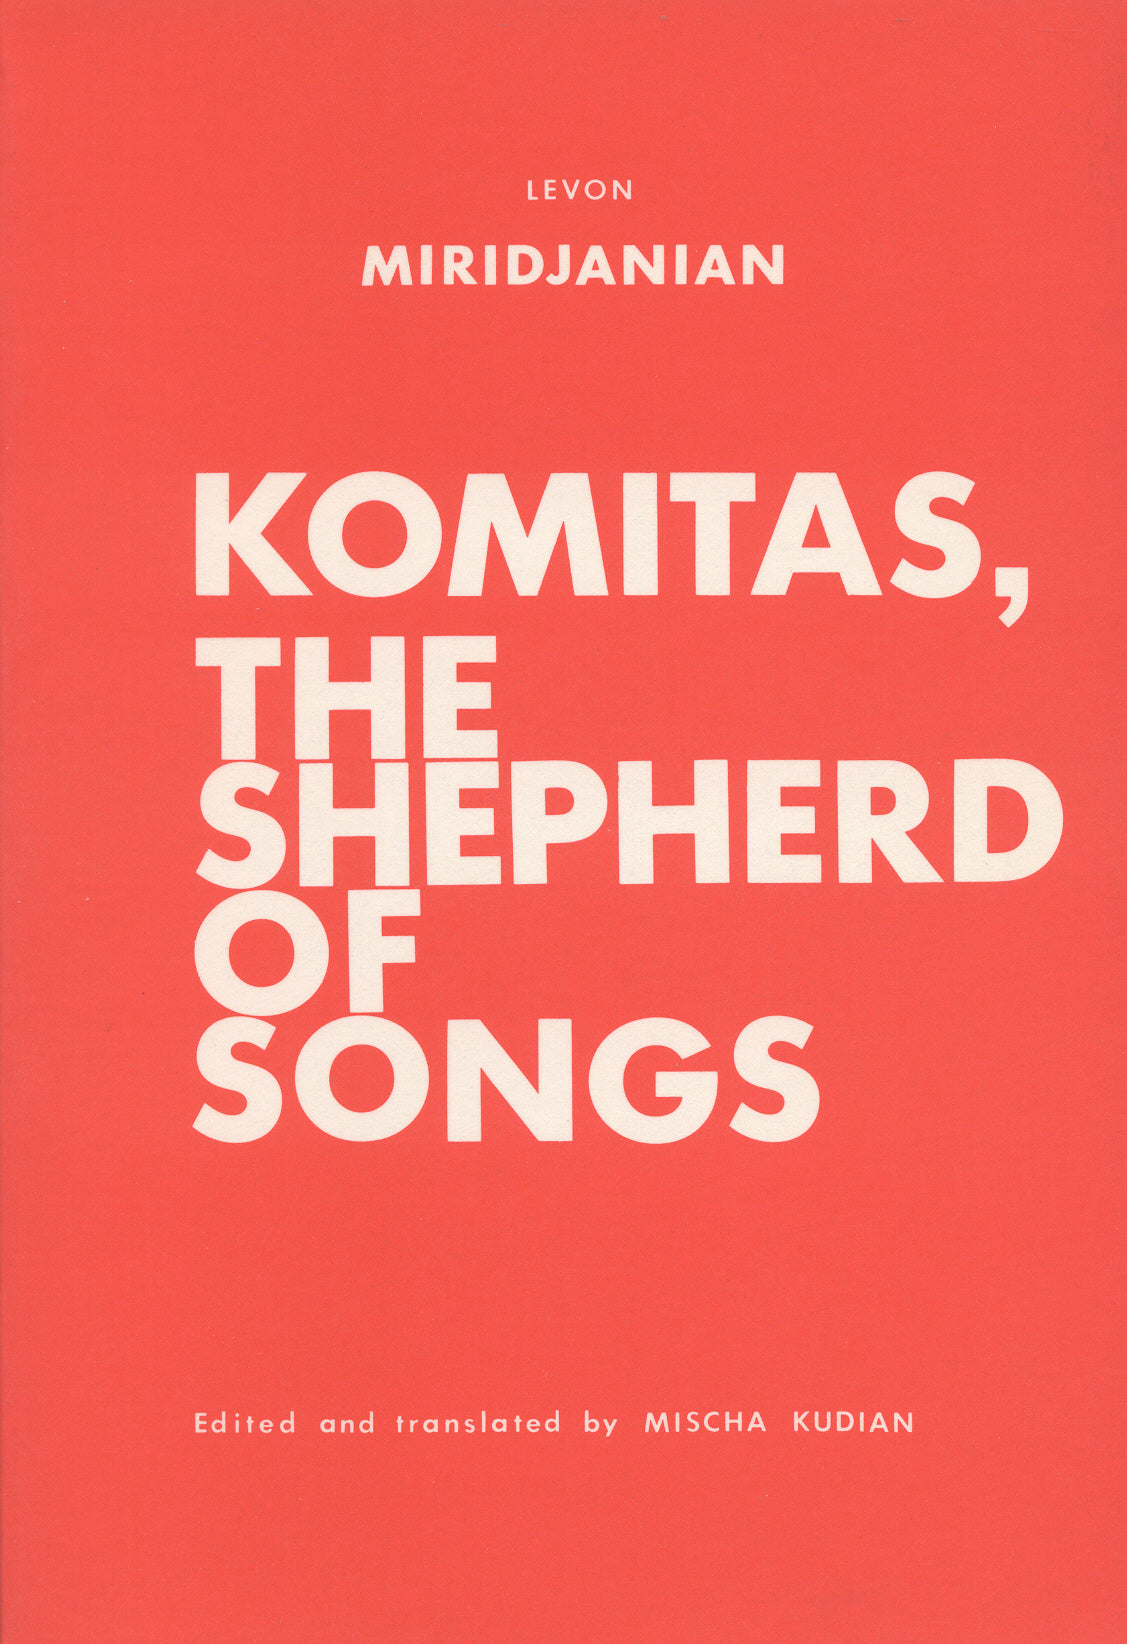 KOMITAS, THE SHEPHERD OF SONGS